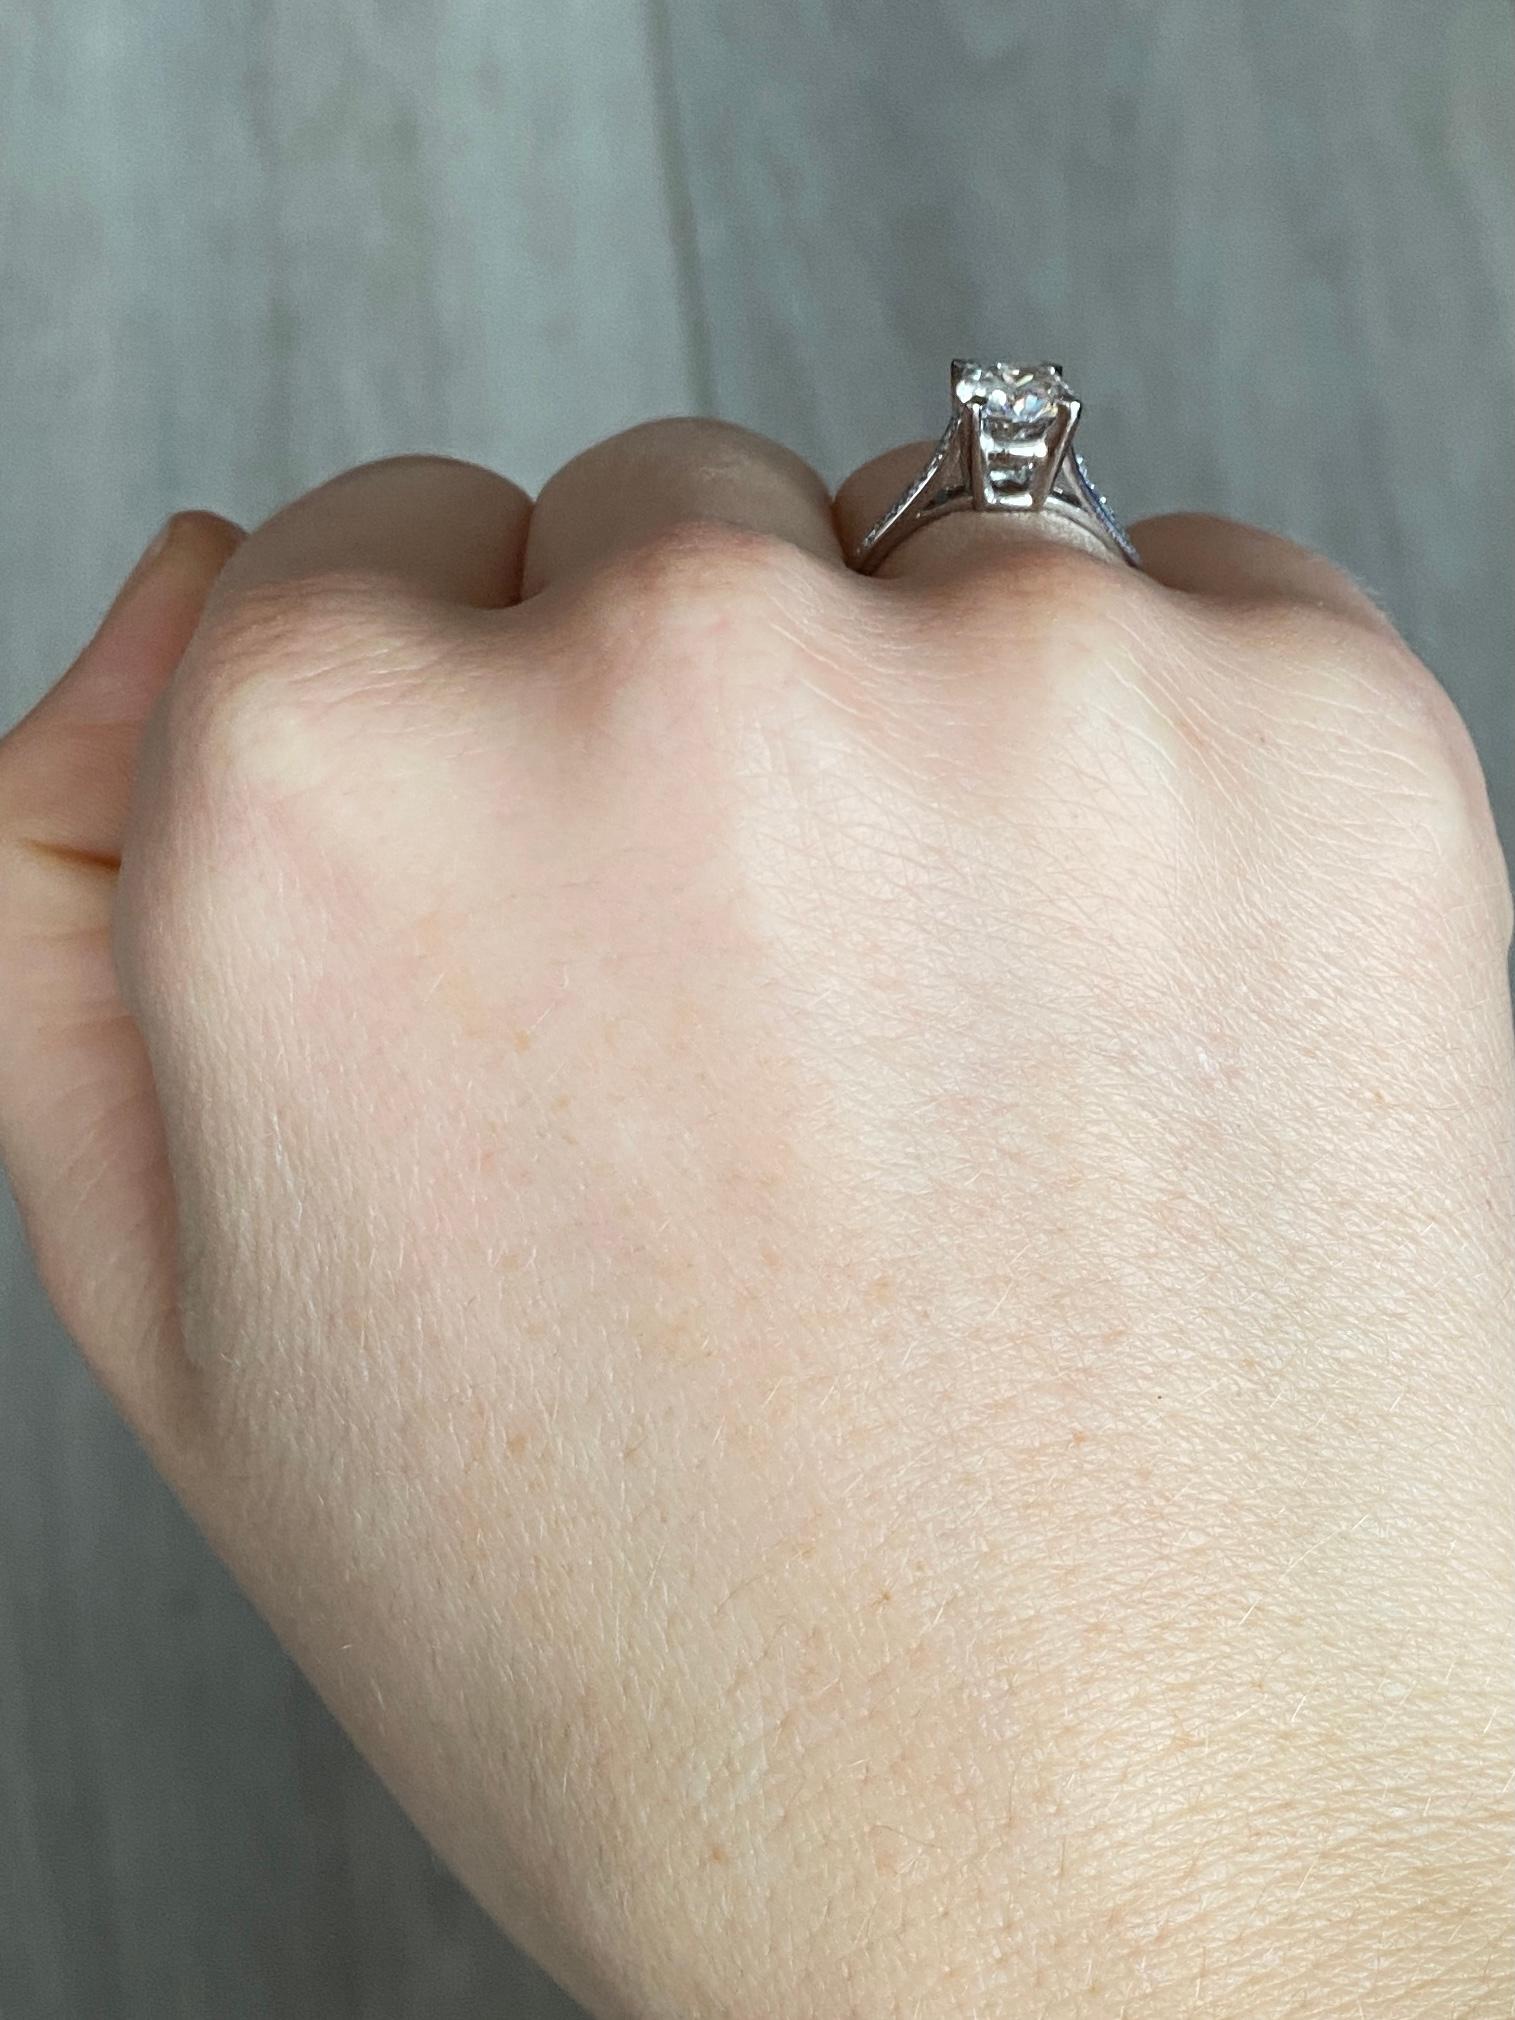 Der Hauptdiamant in diesem Ring misst 1,2 ct und hat die Farbe H/I. Der Stein glänzt wunderschön und an den Schultern sitzen 10 kleine Diamanten. Der Ring ist aus Platin modelliert. 

Ring Größe: N oder 6 3/4 
Höhe ohne Finger: 7mm

Gewicht: 4g